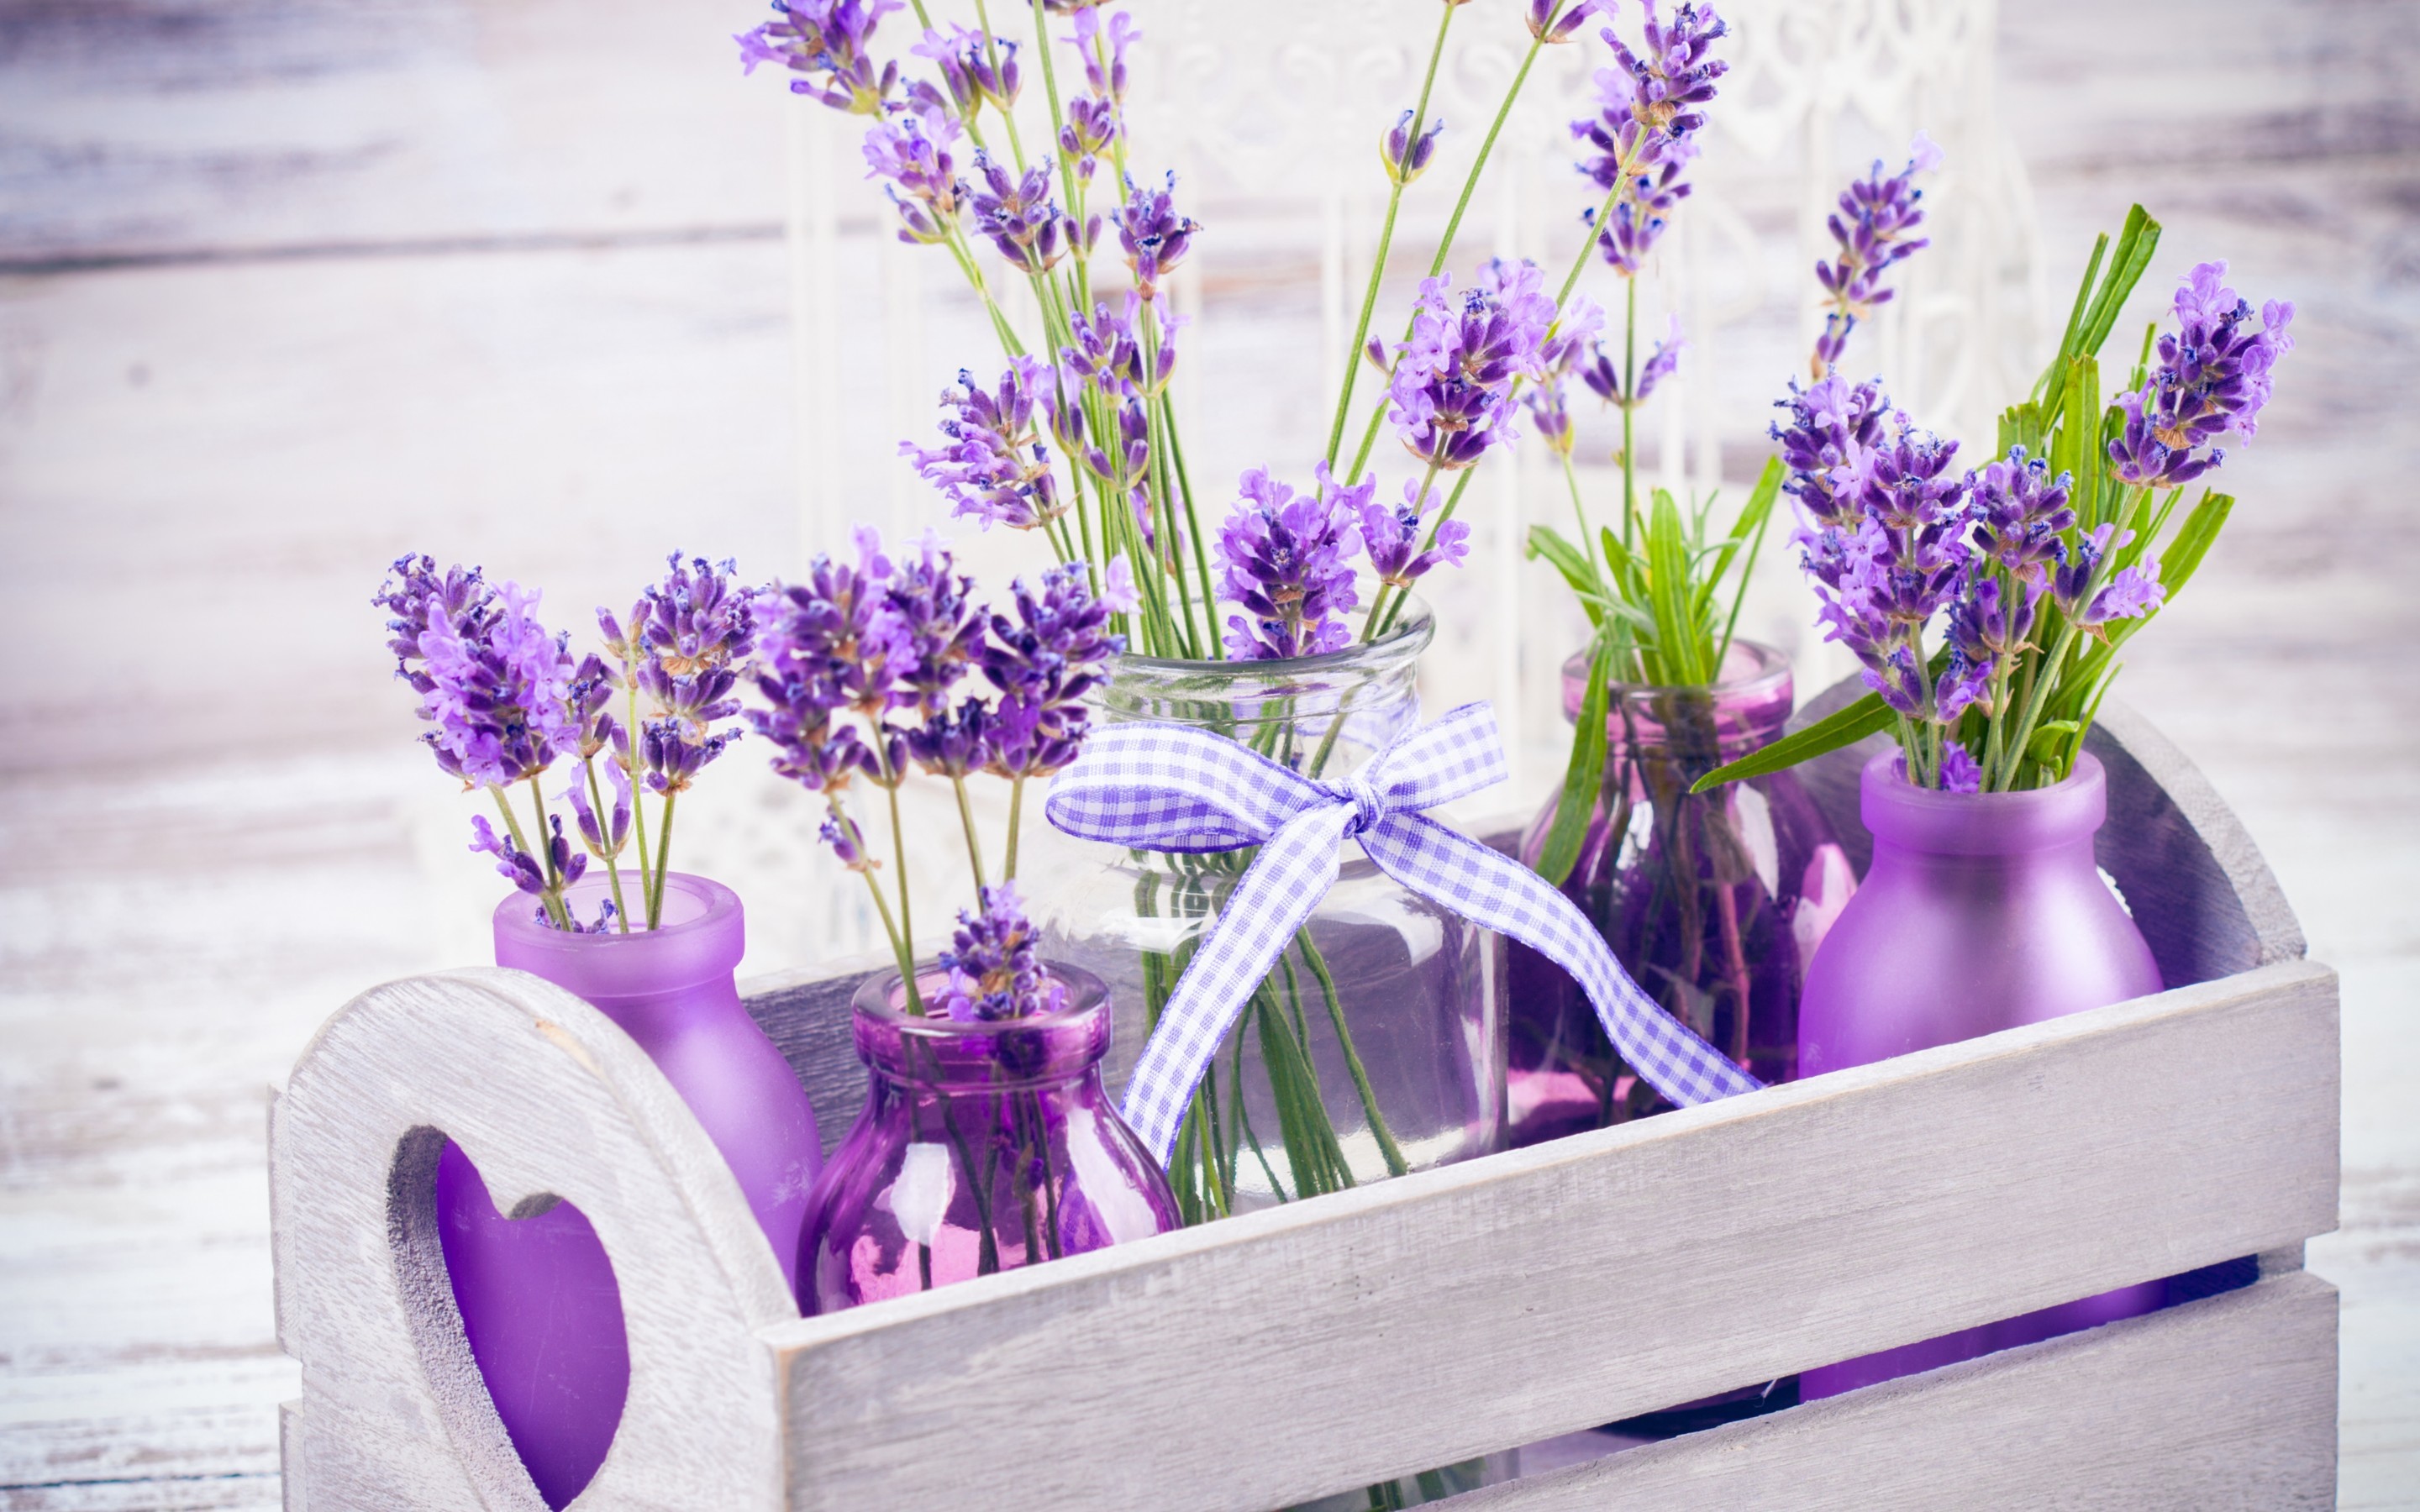 Nếu bạn đang tìm kiếm một món quà tuyệt vời cho tâm hồn và trí não của mình, thì hãy ghé qua các hình ảnh về hoa Lavender tuyệt đẹp này. Hình ảnh Lavender sẽ đưa bạn đến với những cảnh đẹp tươi sáng và hương thơm ngát ngào của loài hoa tuyệt vời này.